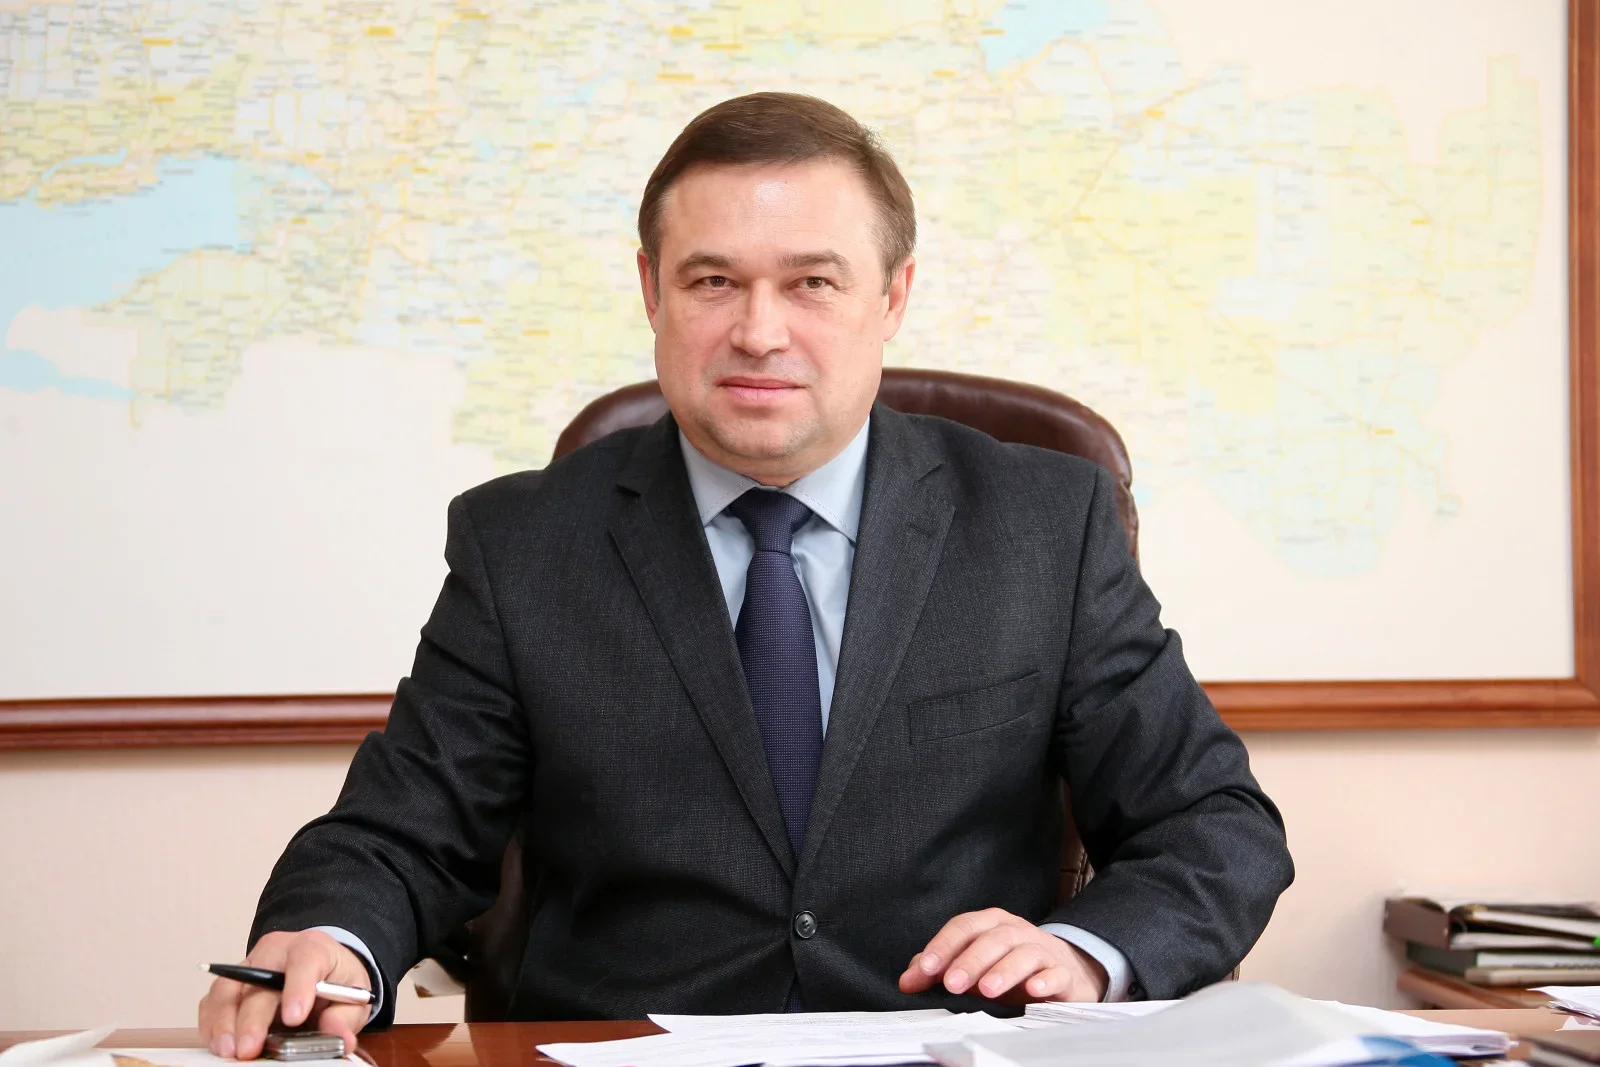 Общественным советником губернатора Ростовской области назначен Виктор Гончаров